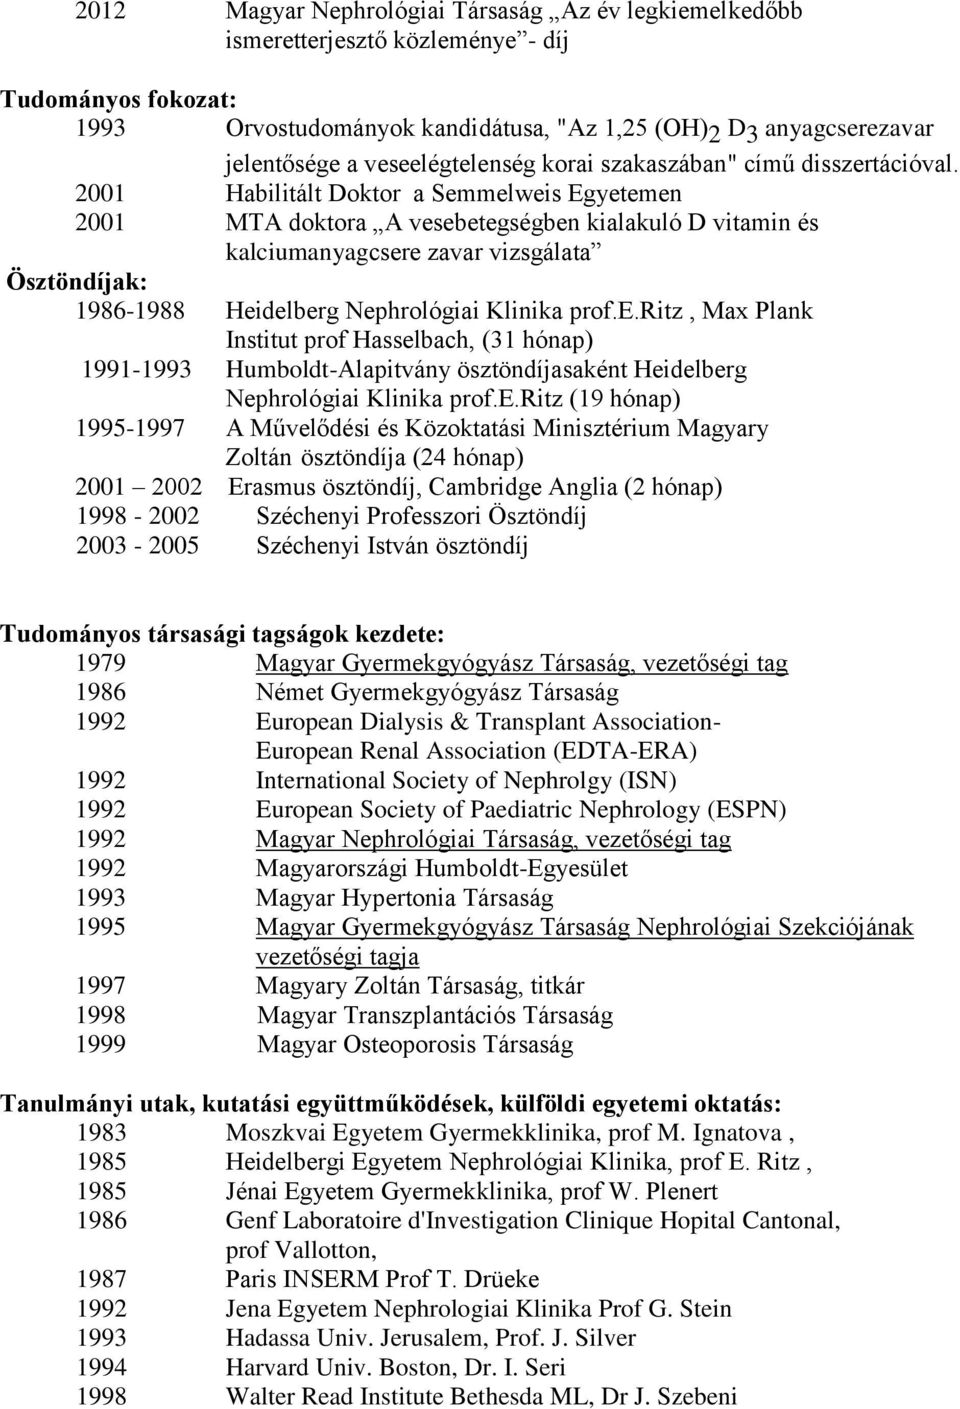 2001 Habilitált Doktor a Semmelweis Egyetemen 2001 MTA doktora A vesebetegségben kialakuló D vitamin és kalciumanyagcsere zavar vizsgálata Ösztöndíjak: 1986-1988 Heidelberg Nephrológiai Klinika prof.